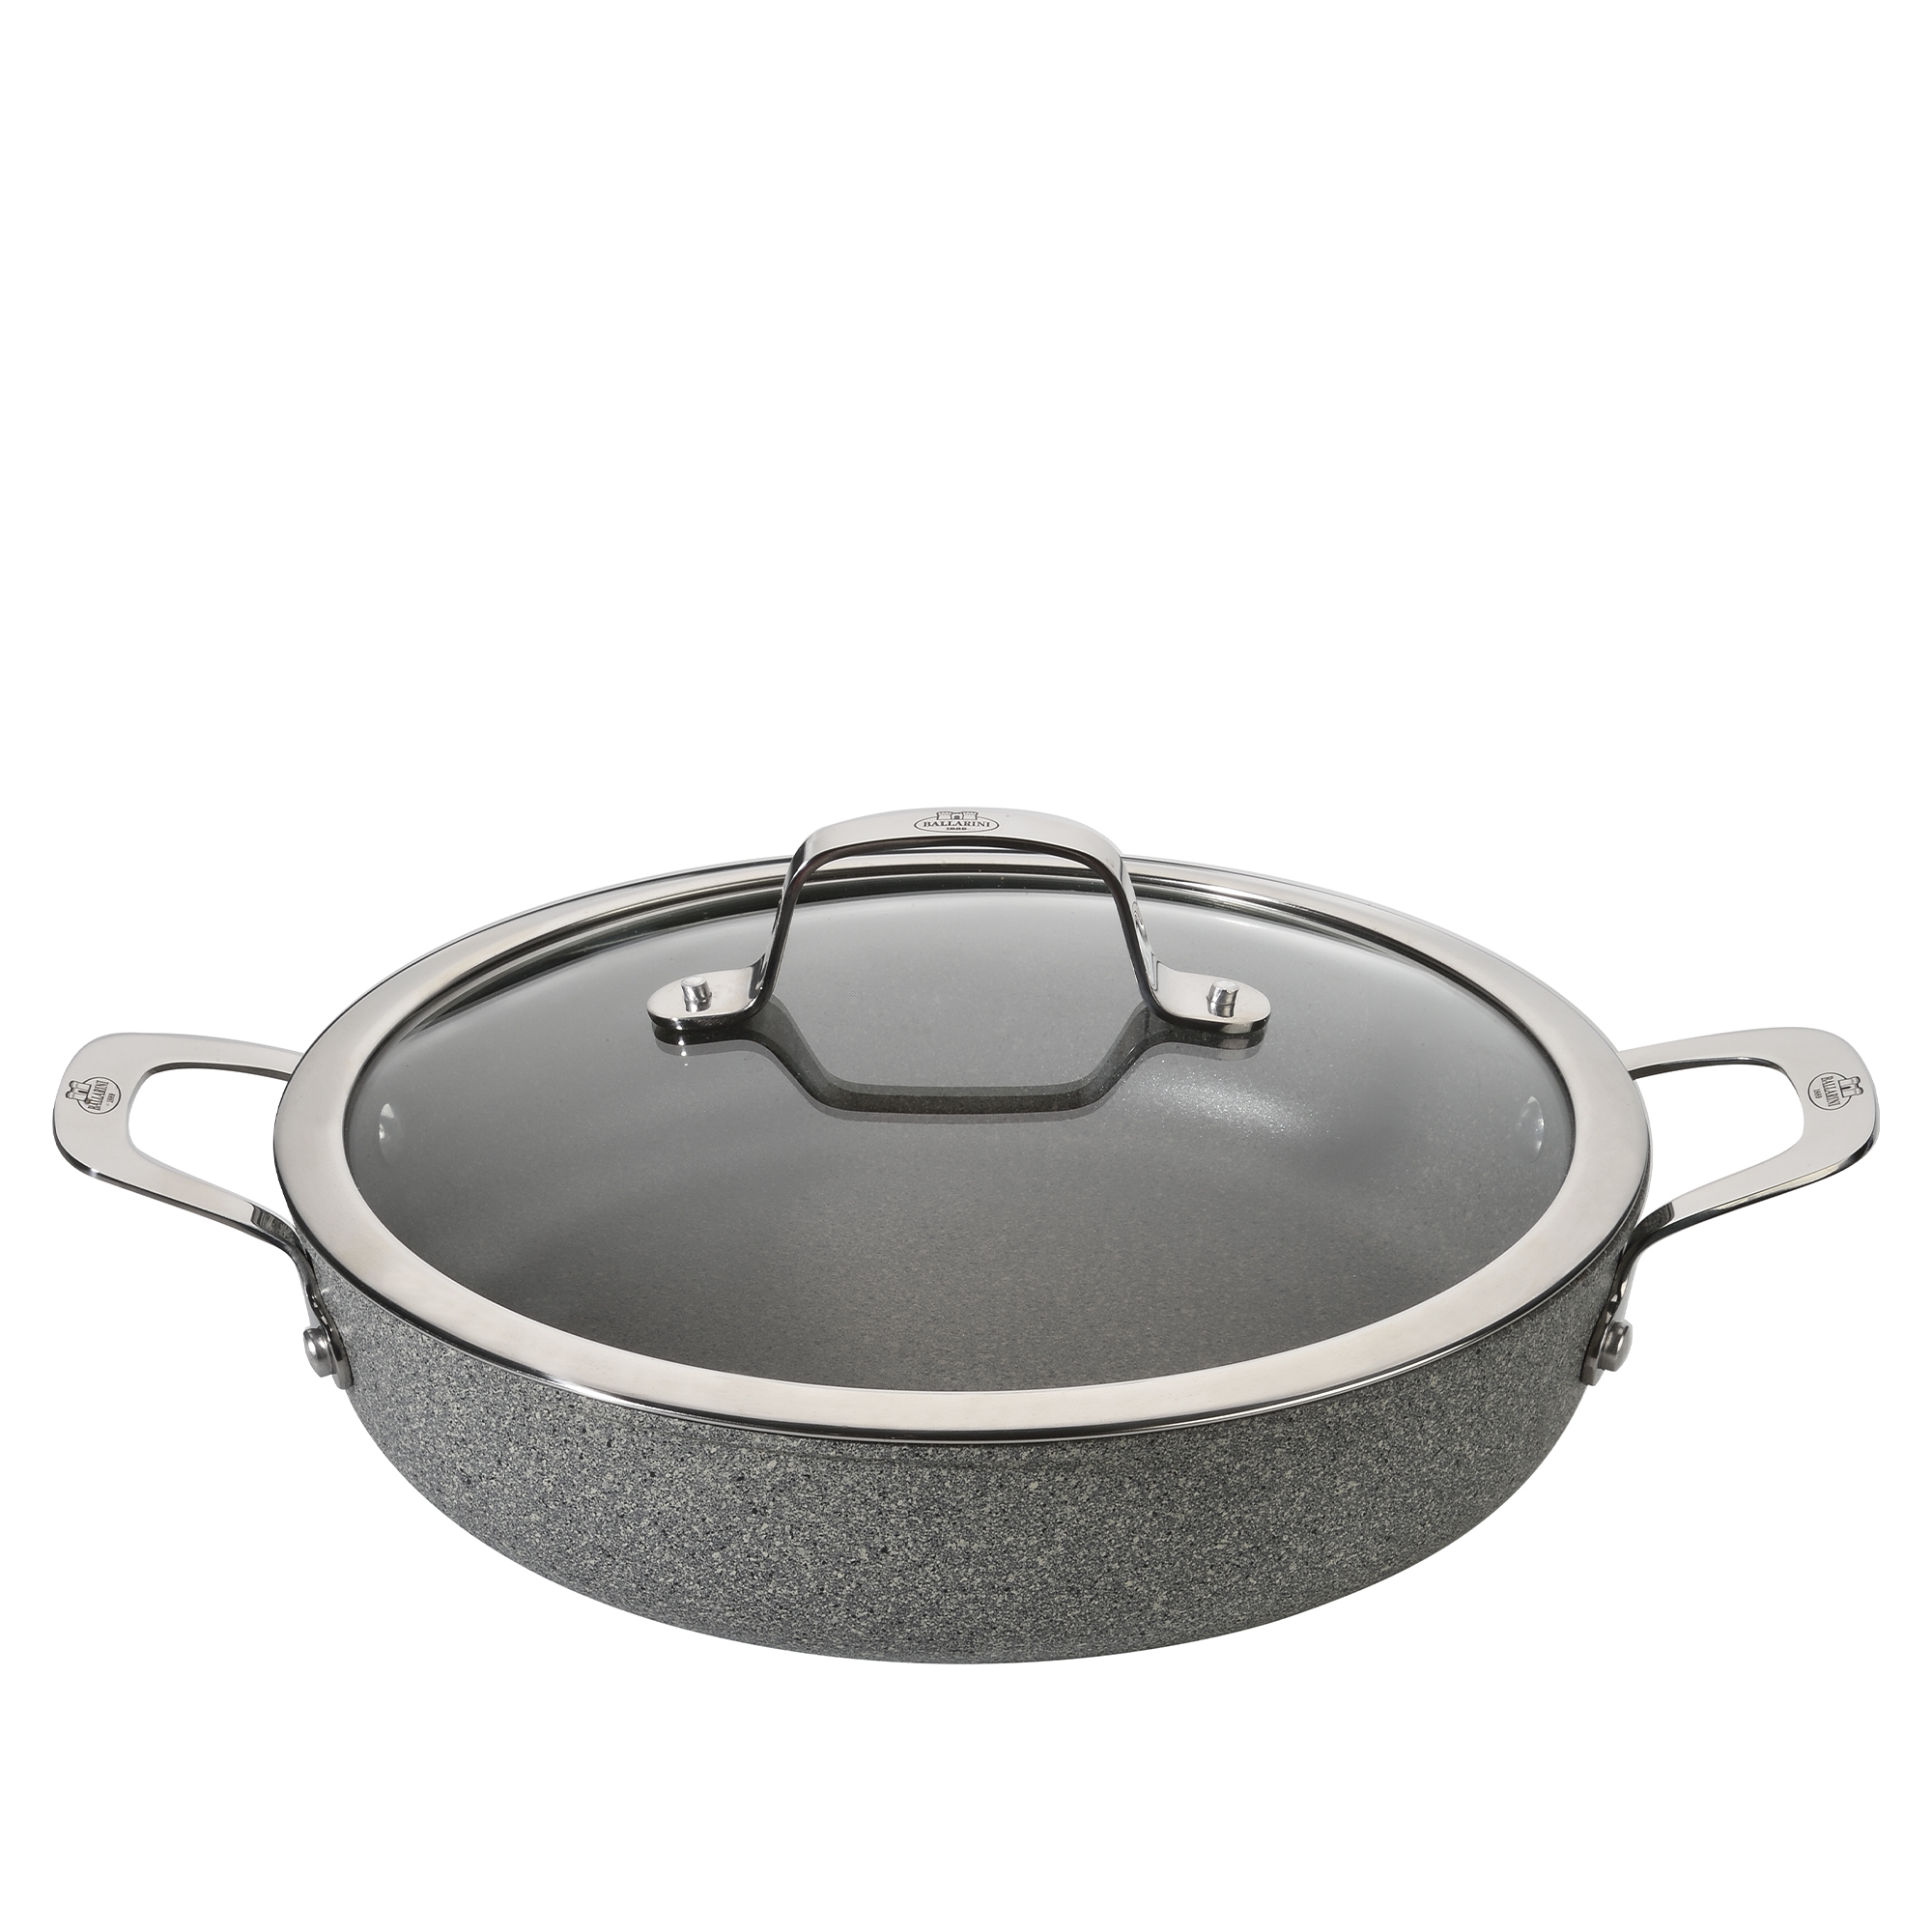 Ballarini - serving pan with glass lid - Salina granitium